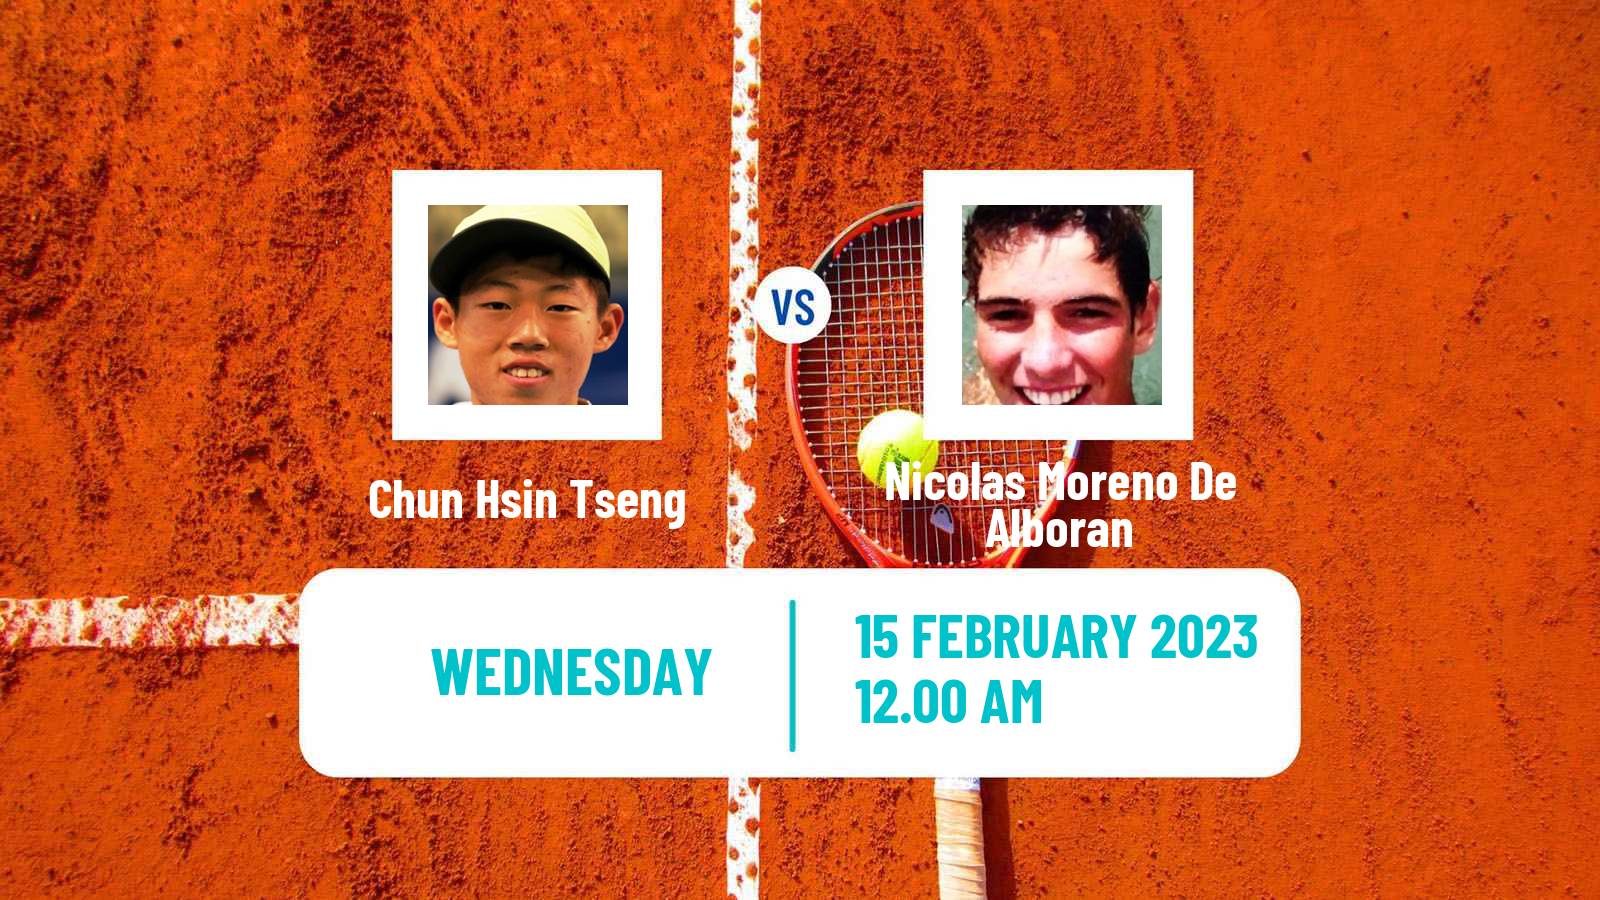 Tennis ATP Challenger Chun Hsin Tseng - Nicolas Moreno De Alboran